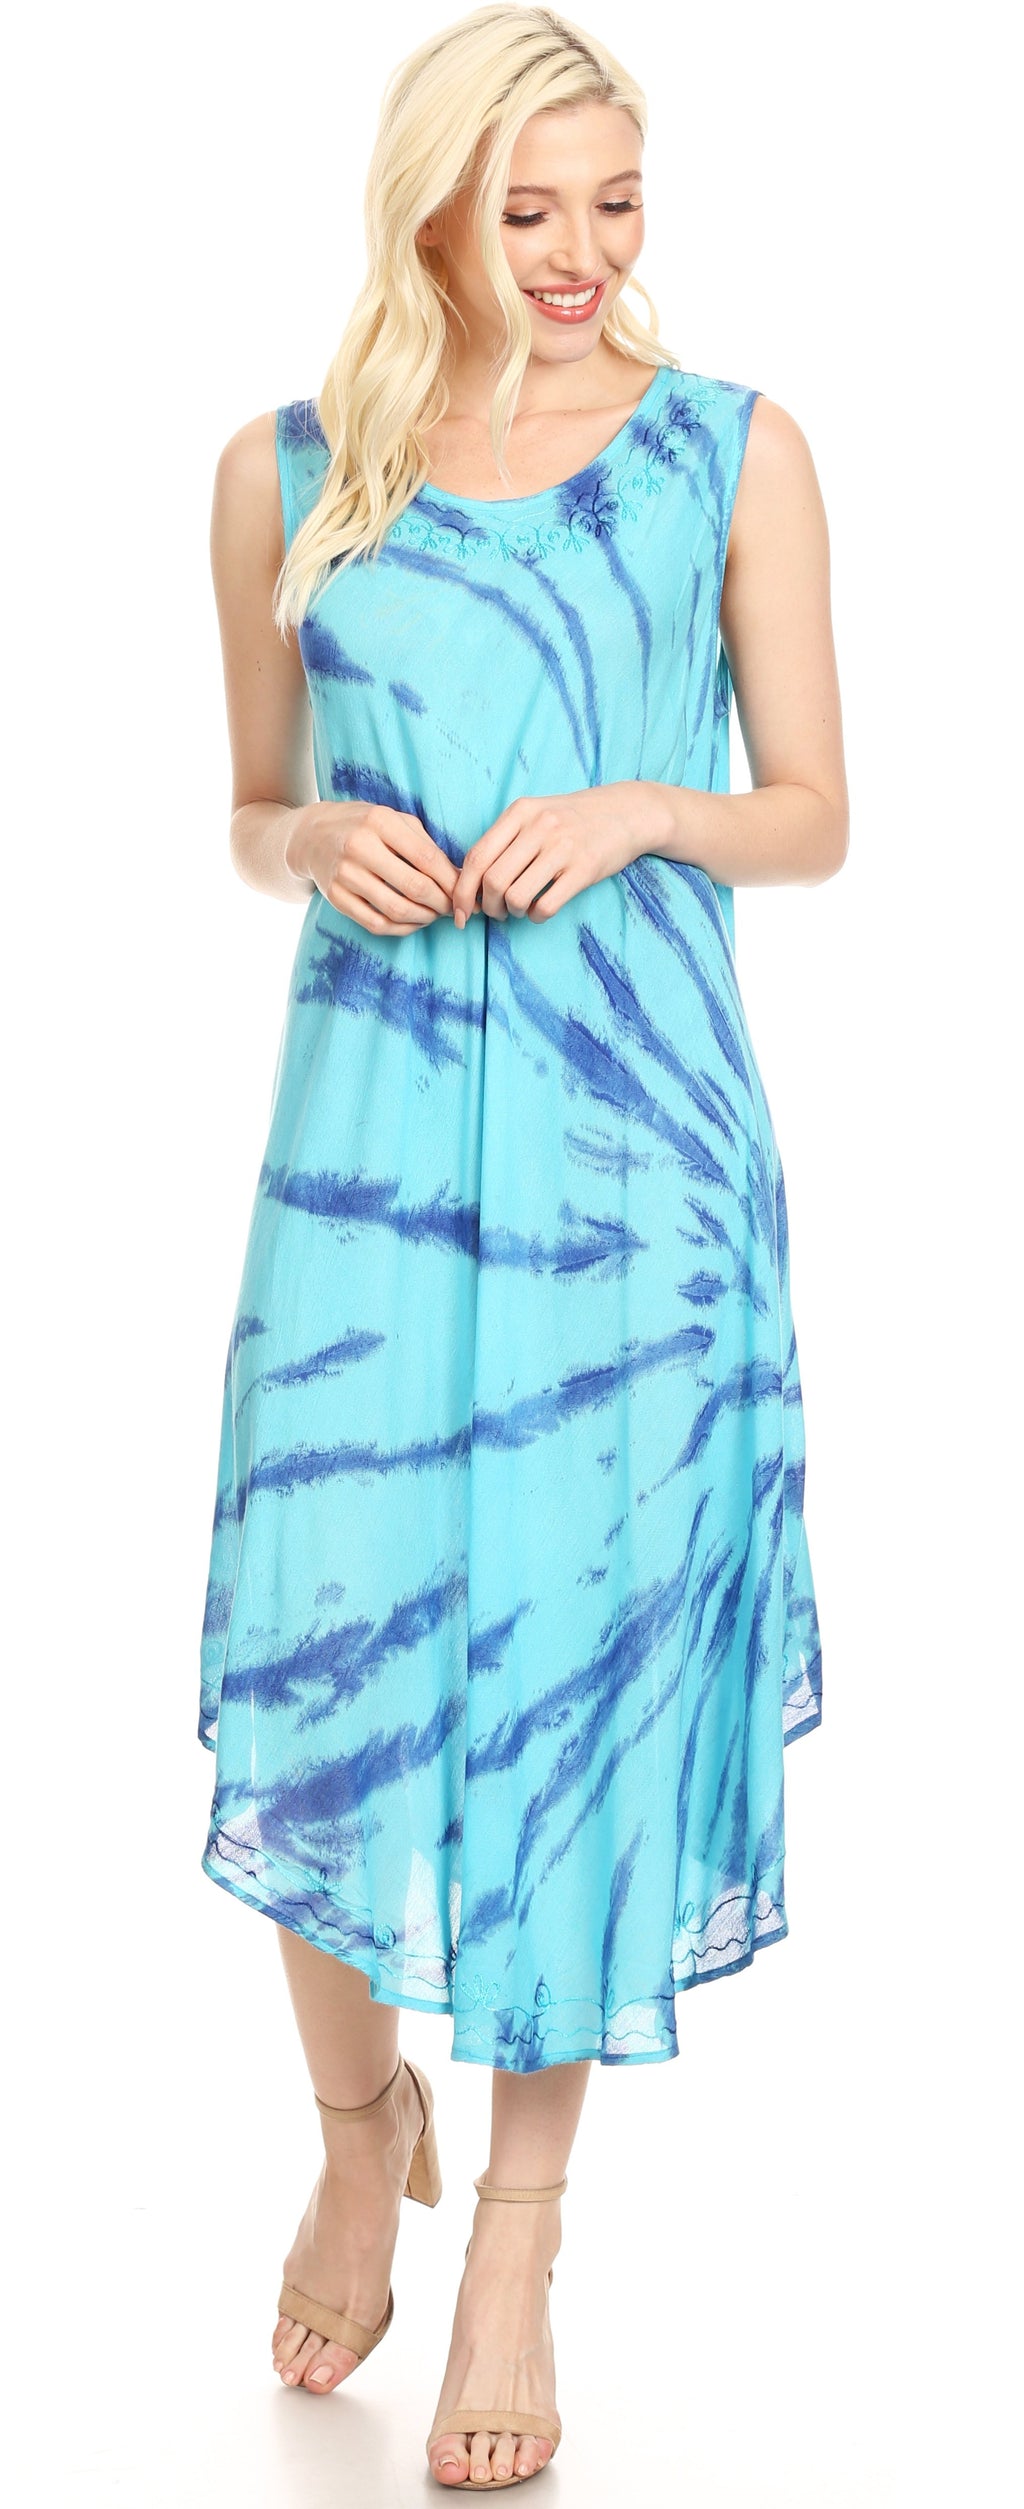 Sakkas Tia Women's Casual Summer Maxi Loose Fit Sleeveless Tank Dress